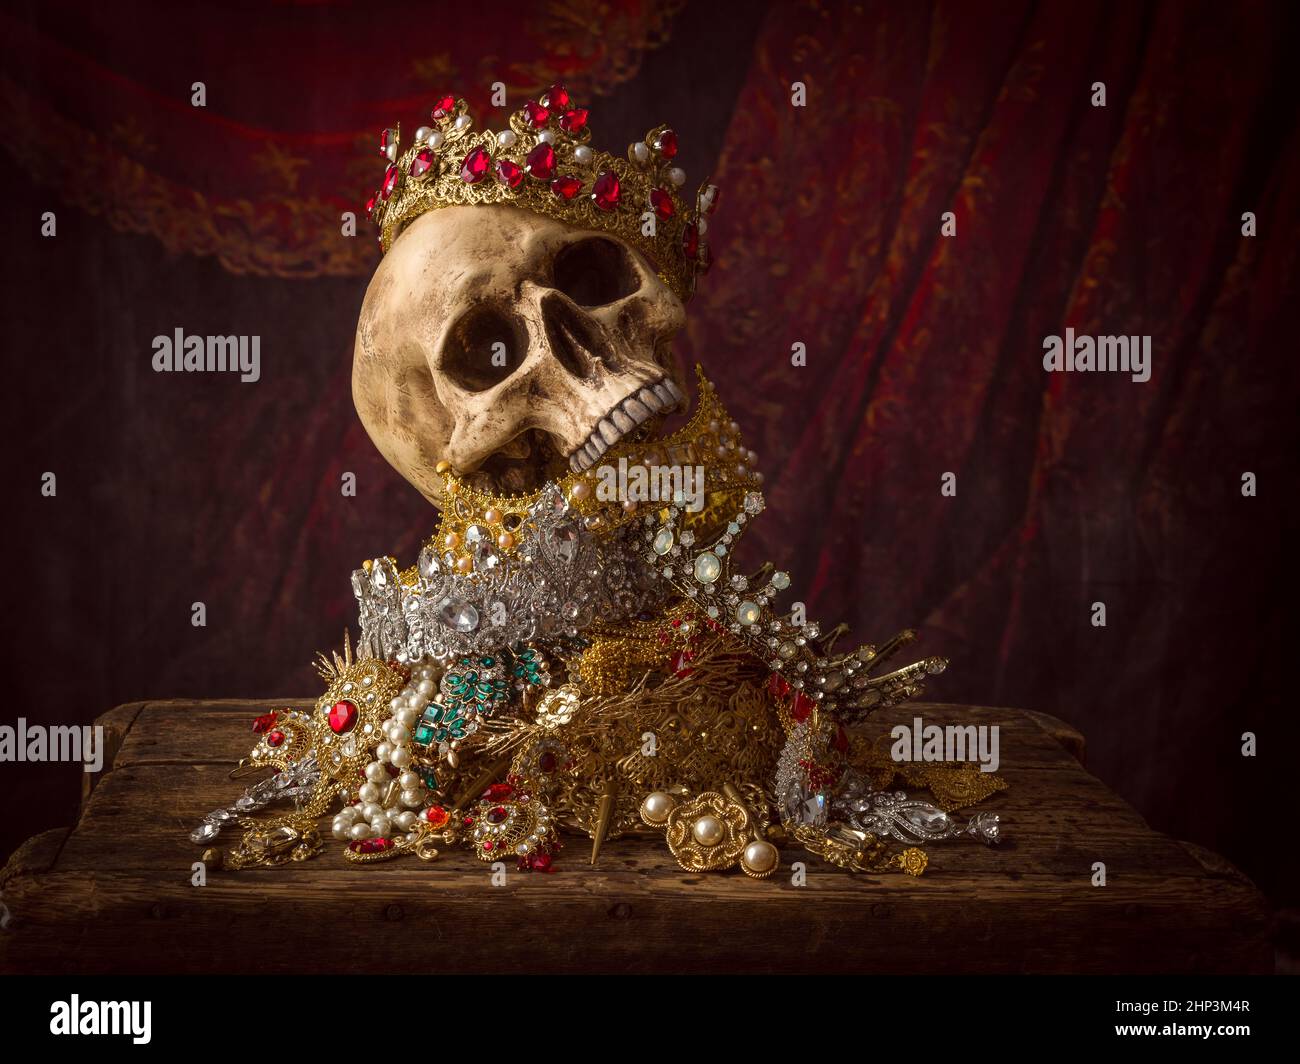 Immagine romantica di un tesoro pieno di gioielli, gemme preziose e corone dorate del re Foto Stock